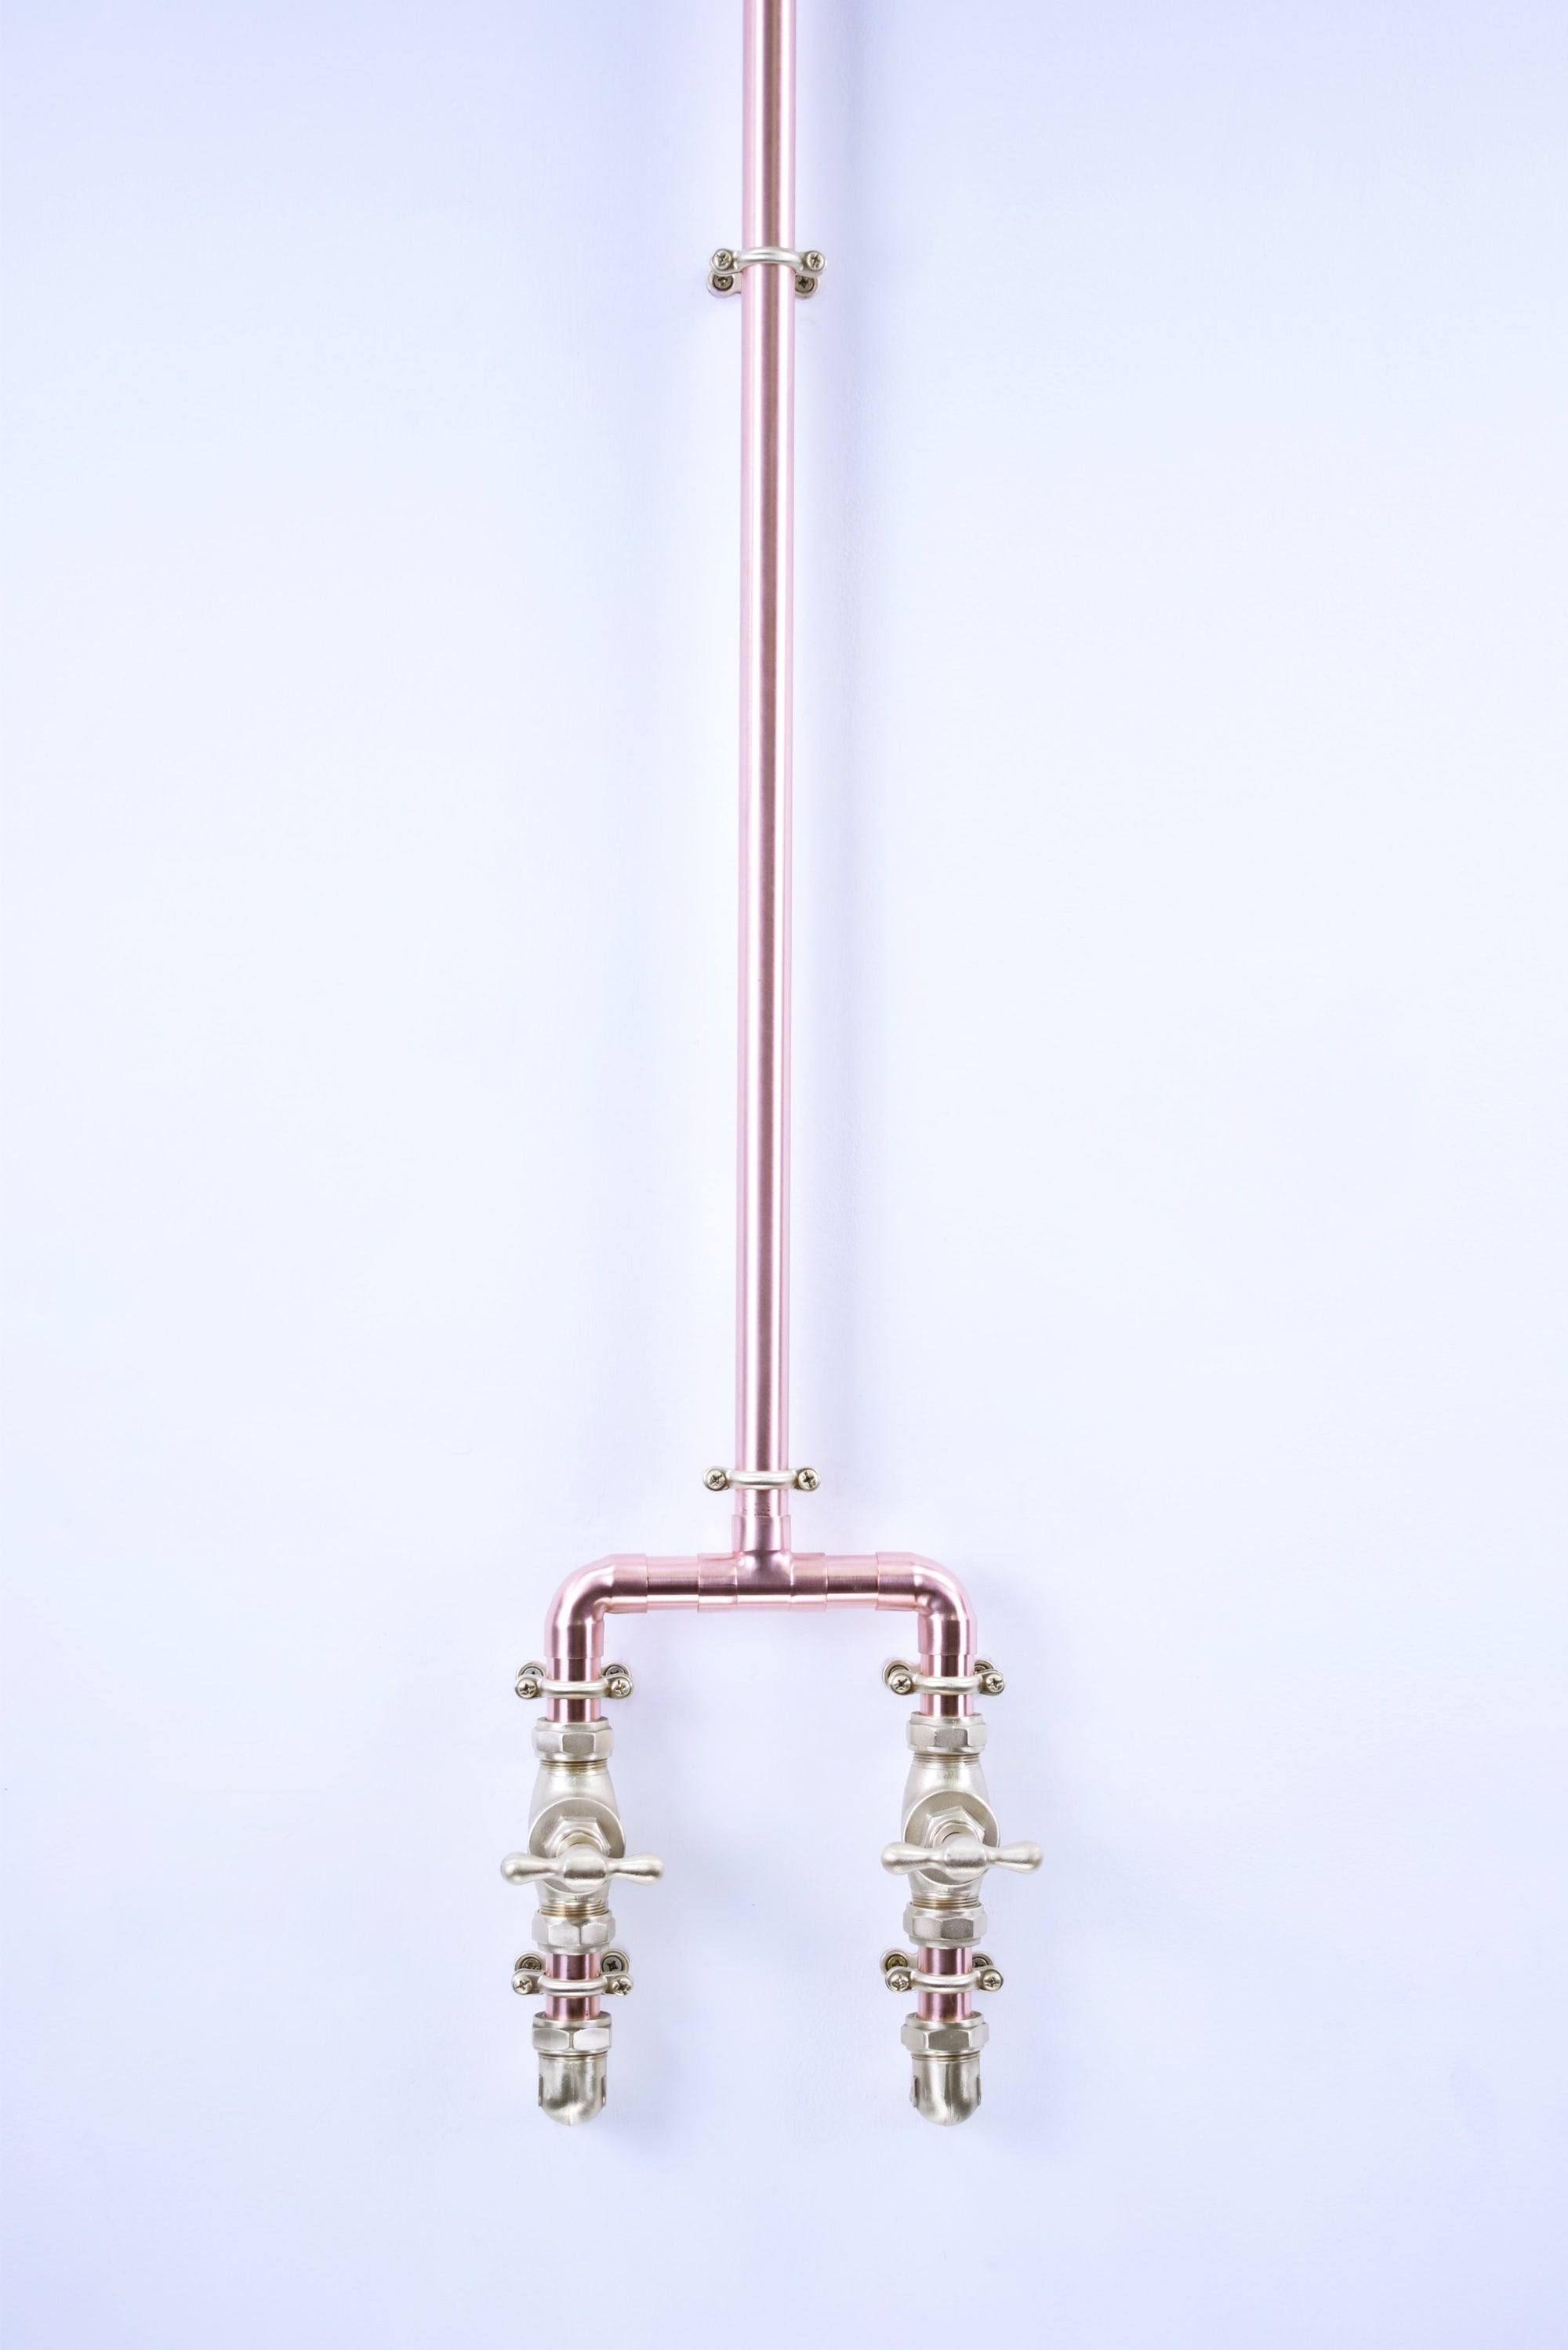 Copper Shower - Assaroe - Proper Copper Design